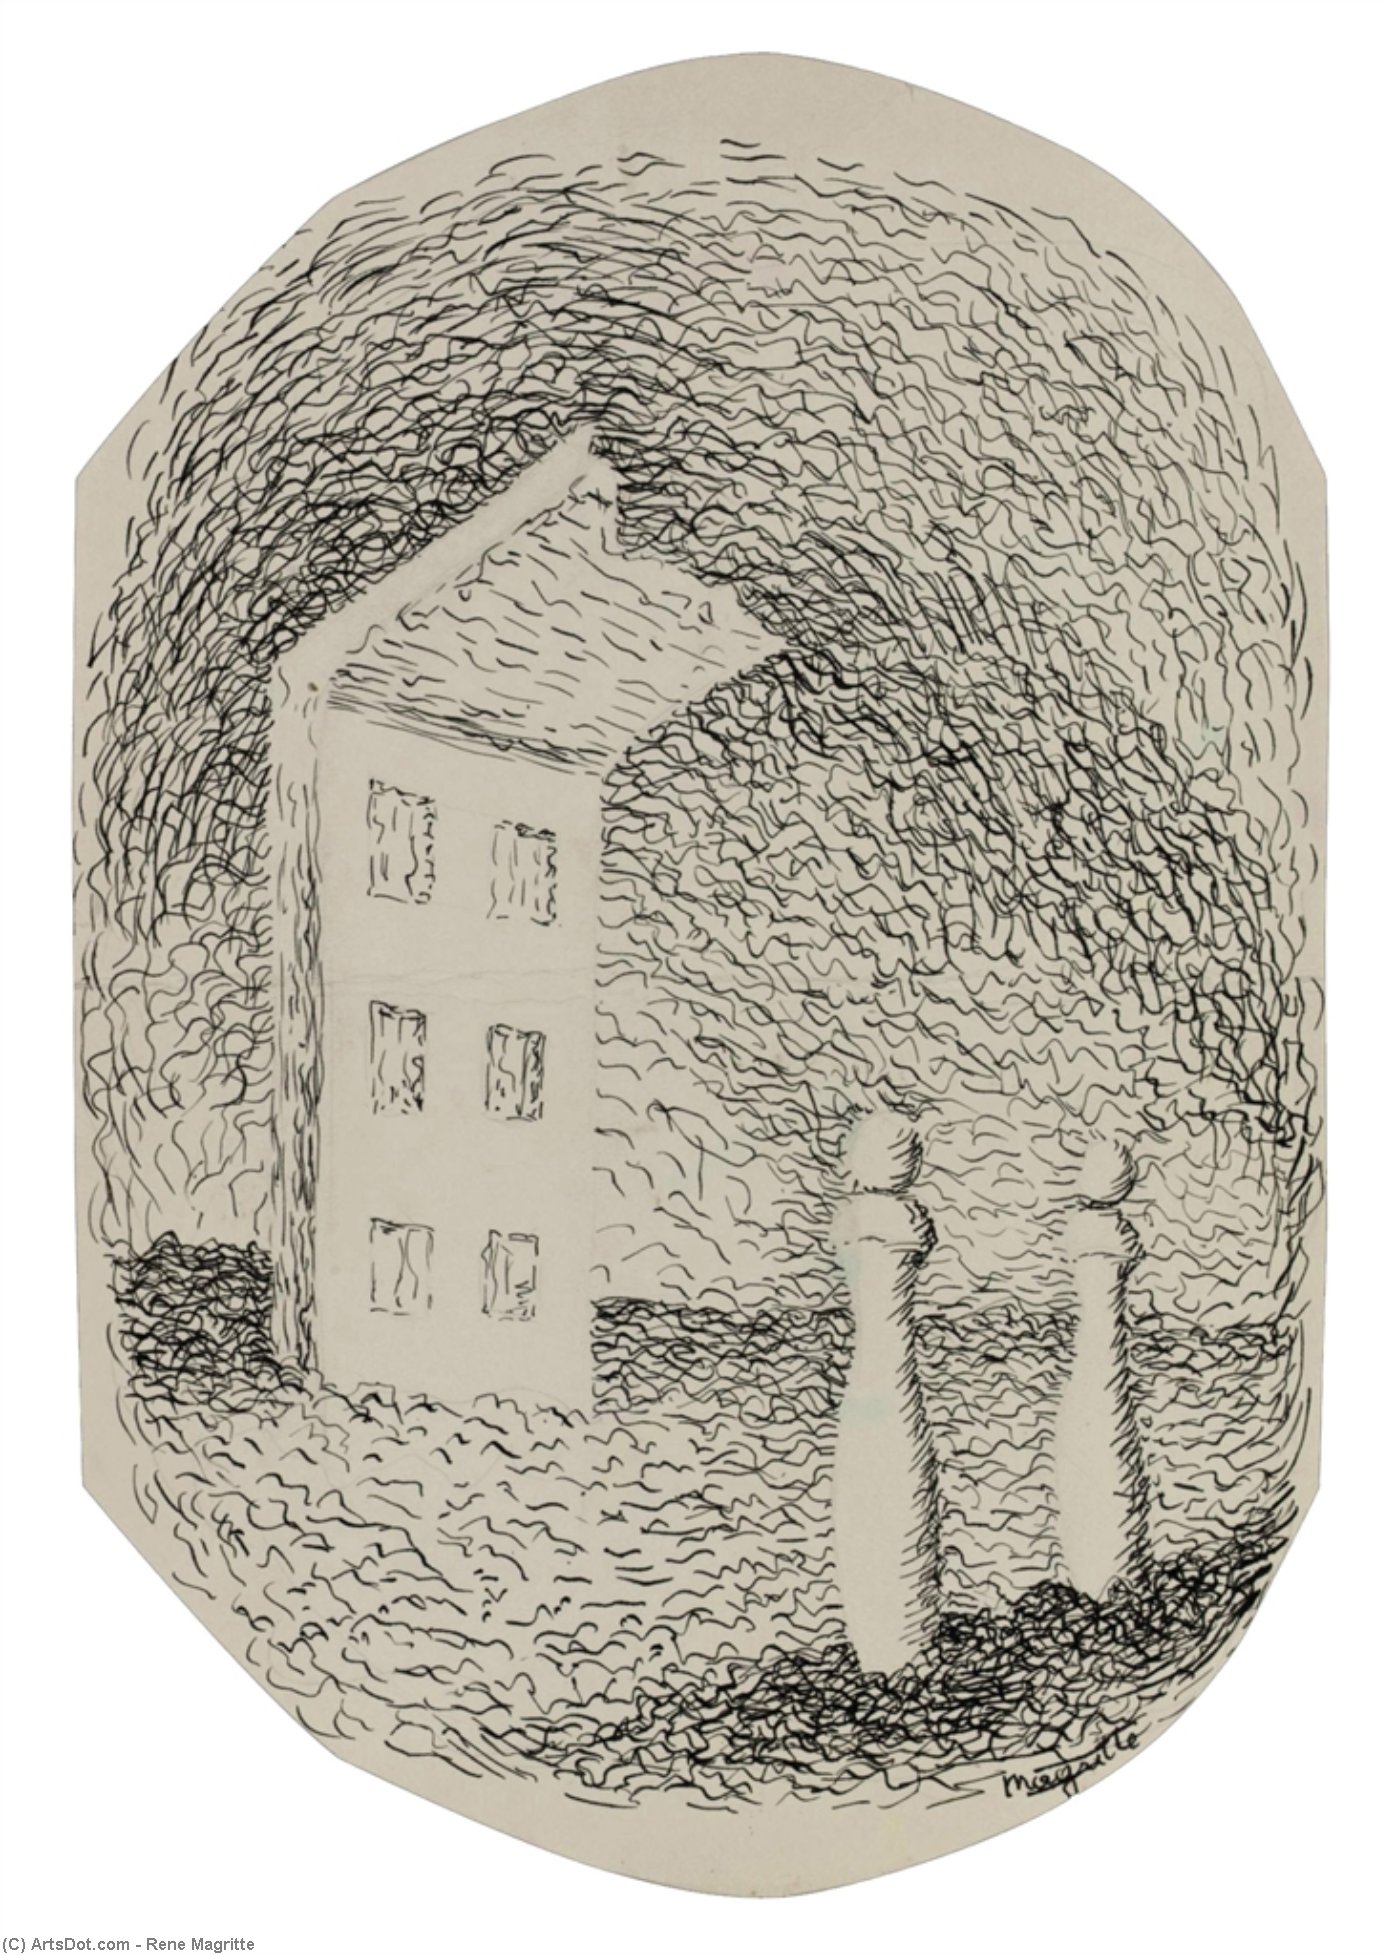 Wikoo.org - موسوعة الفنون الجميلة - اللوحة، العمل الفني Rene Magritte - La maison avec deux quilles